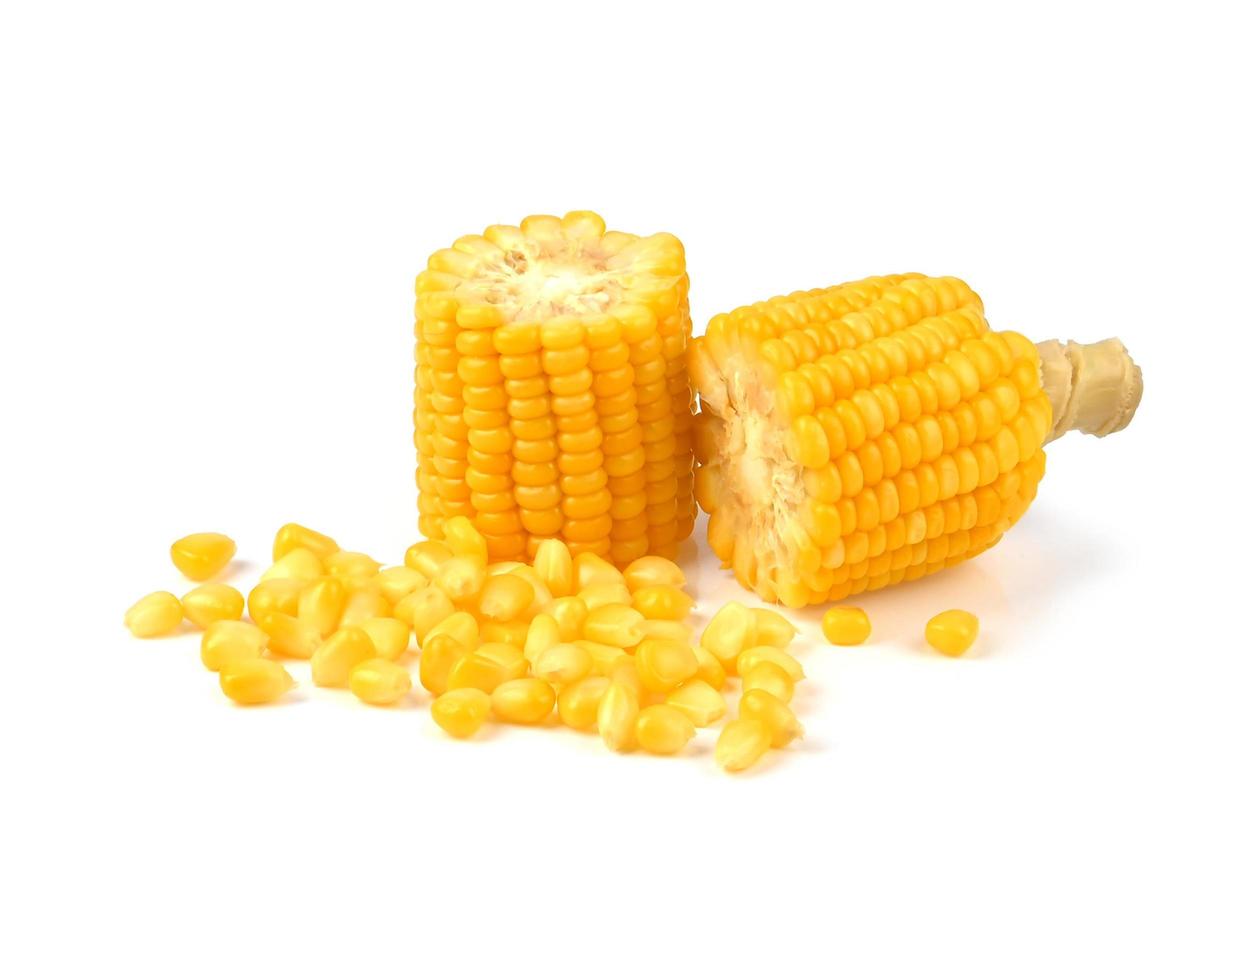 un trozo de maíz dulce y semillas aislado en un fondo blanco foto